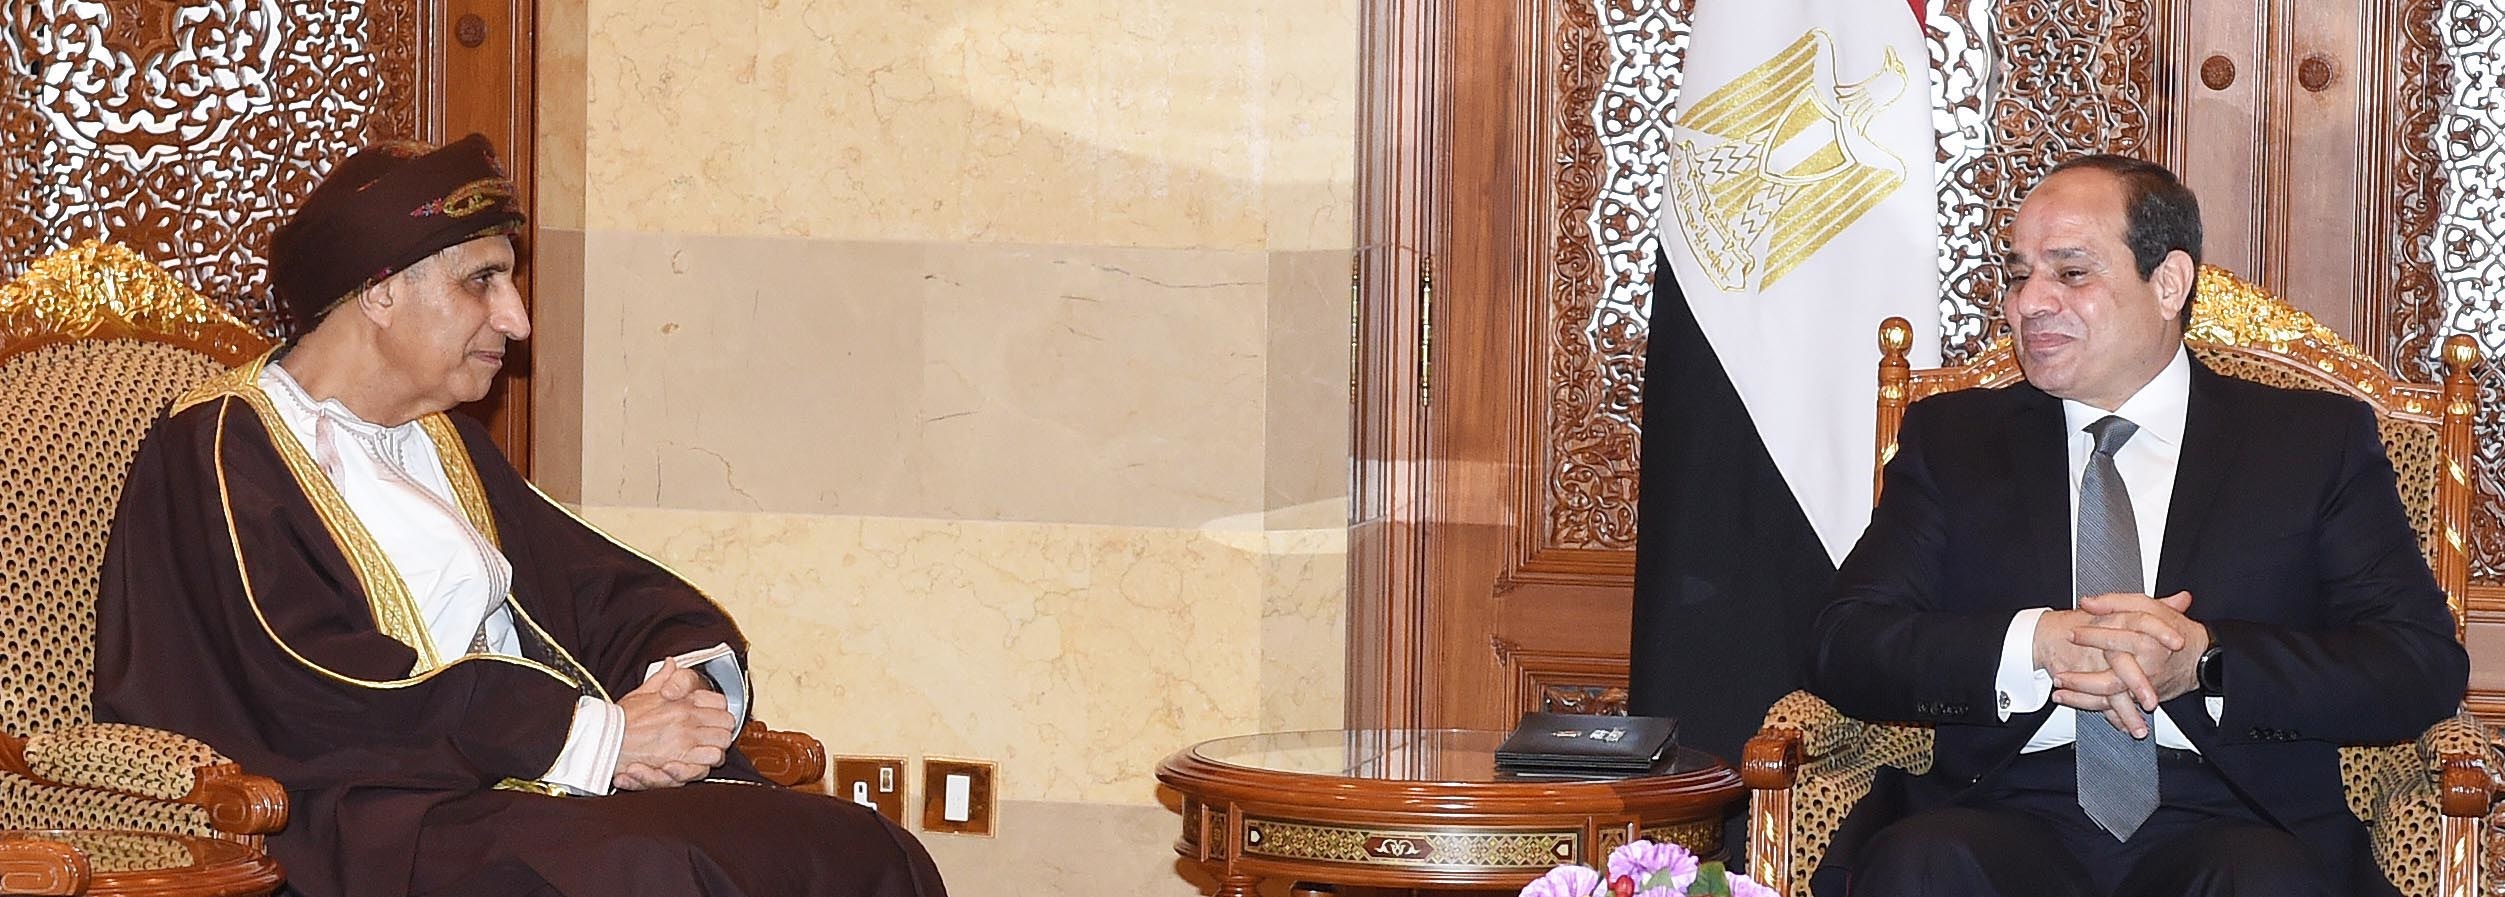 الرئيس المصري يستقبل السيد فهد